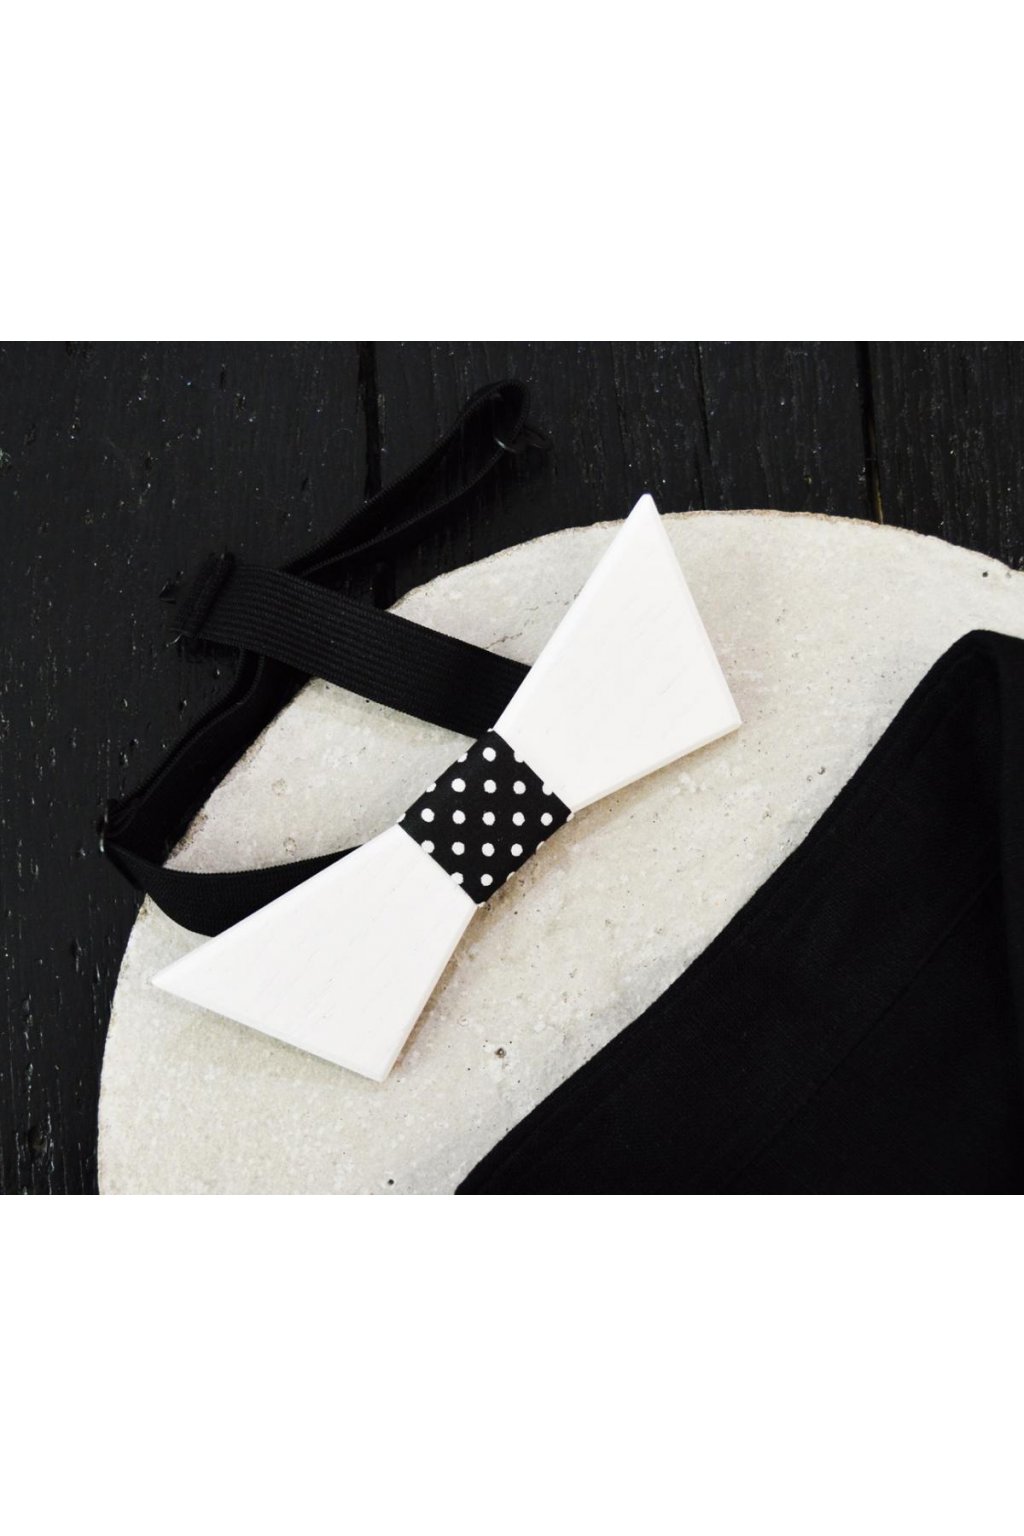 Dřevěný motýlek - bílý s černým vázáním a bílými puntíky